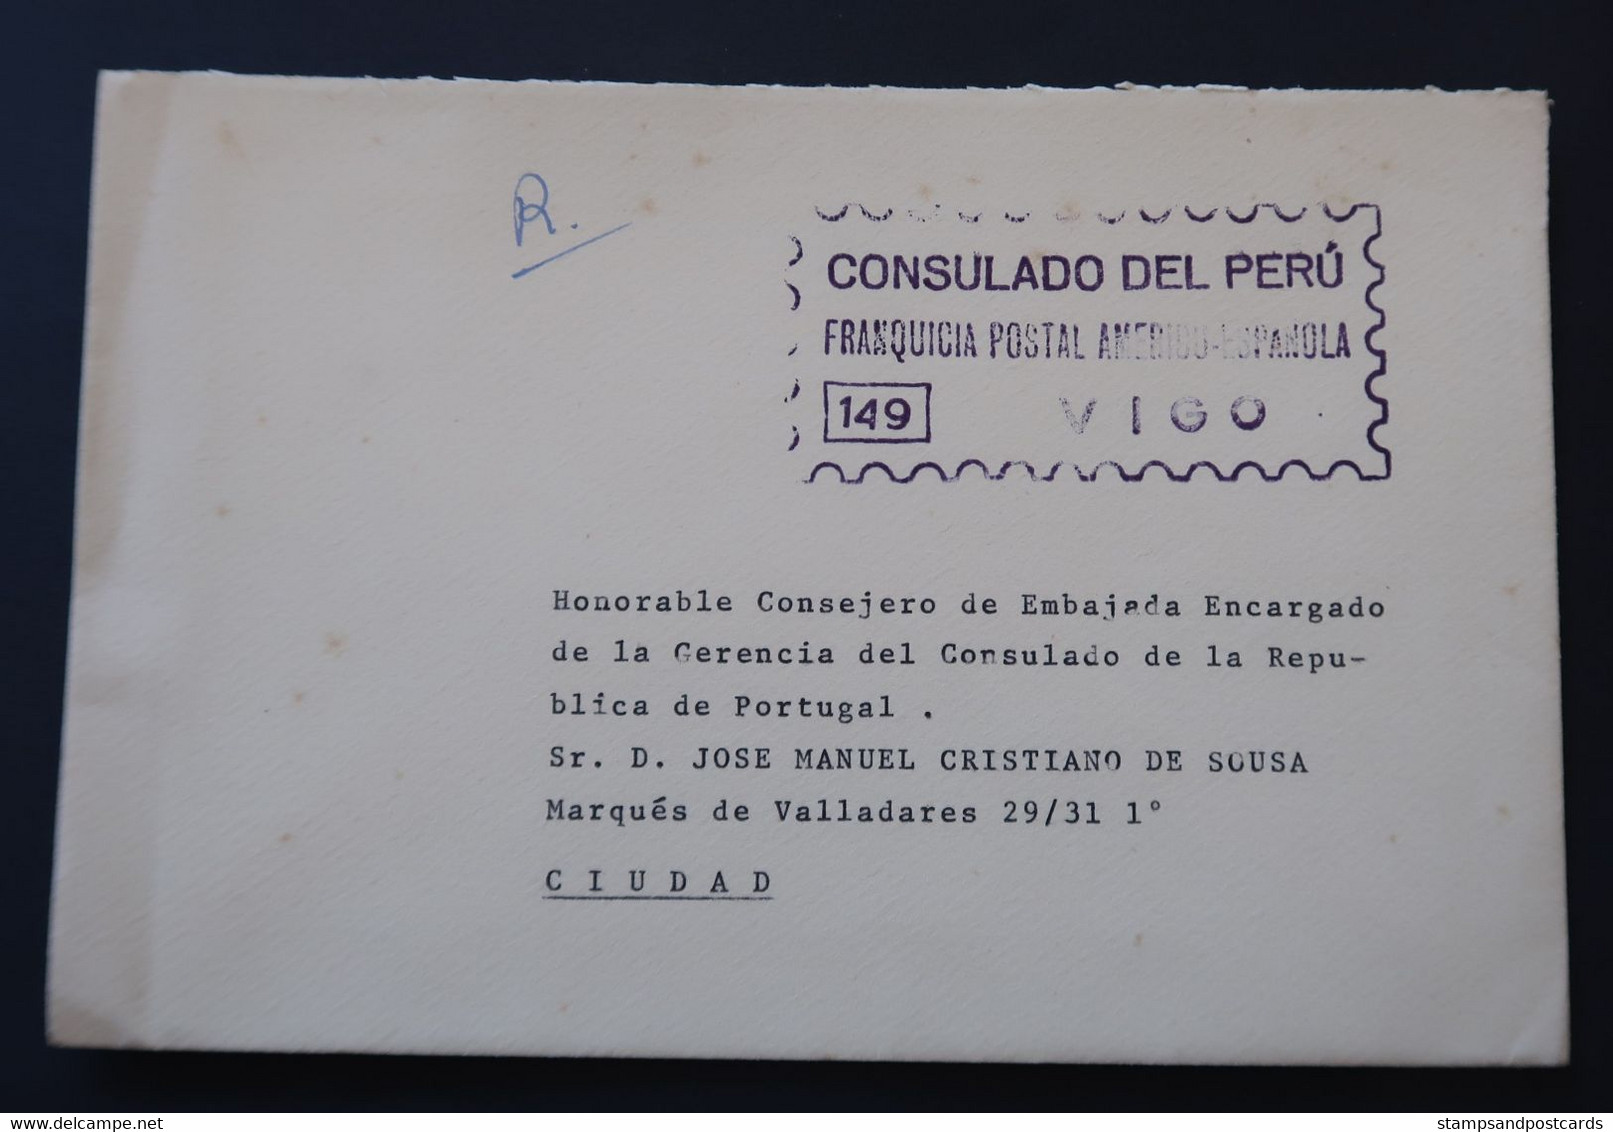 Espagne 1970 Lettre Franchise Postal Vigo Consulat Perú España Franquicia Consulado Peru Official Paid Spain - Postage Free